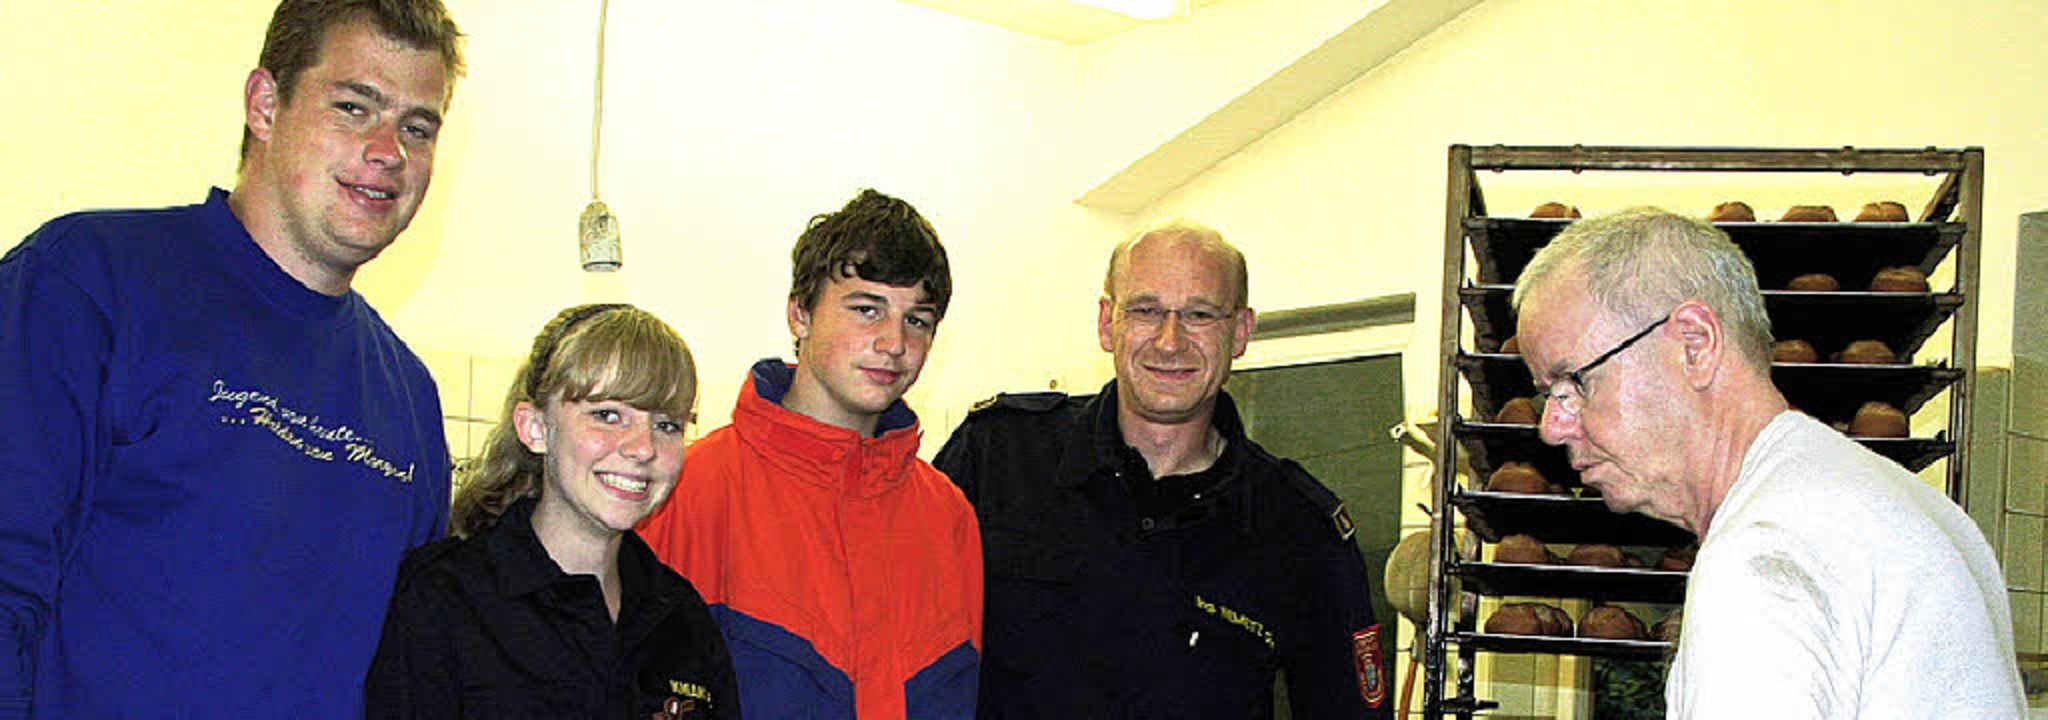 Der Jugendleiter der Bad Säckinger Jug...mit den frischen Brötchen (von links).  | Foto: bz